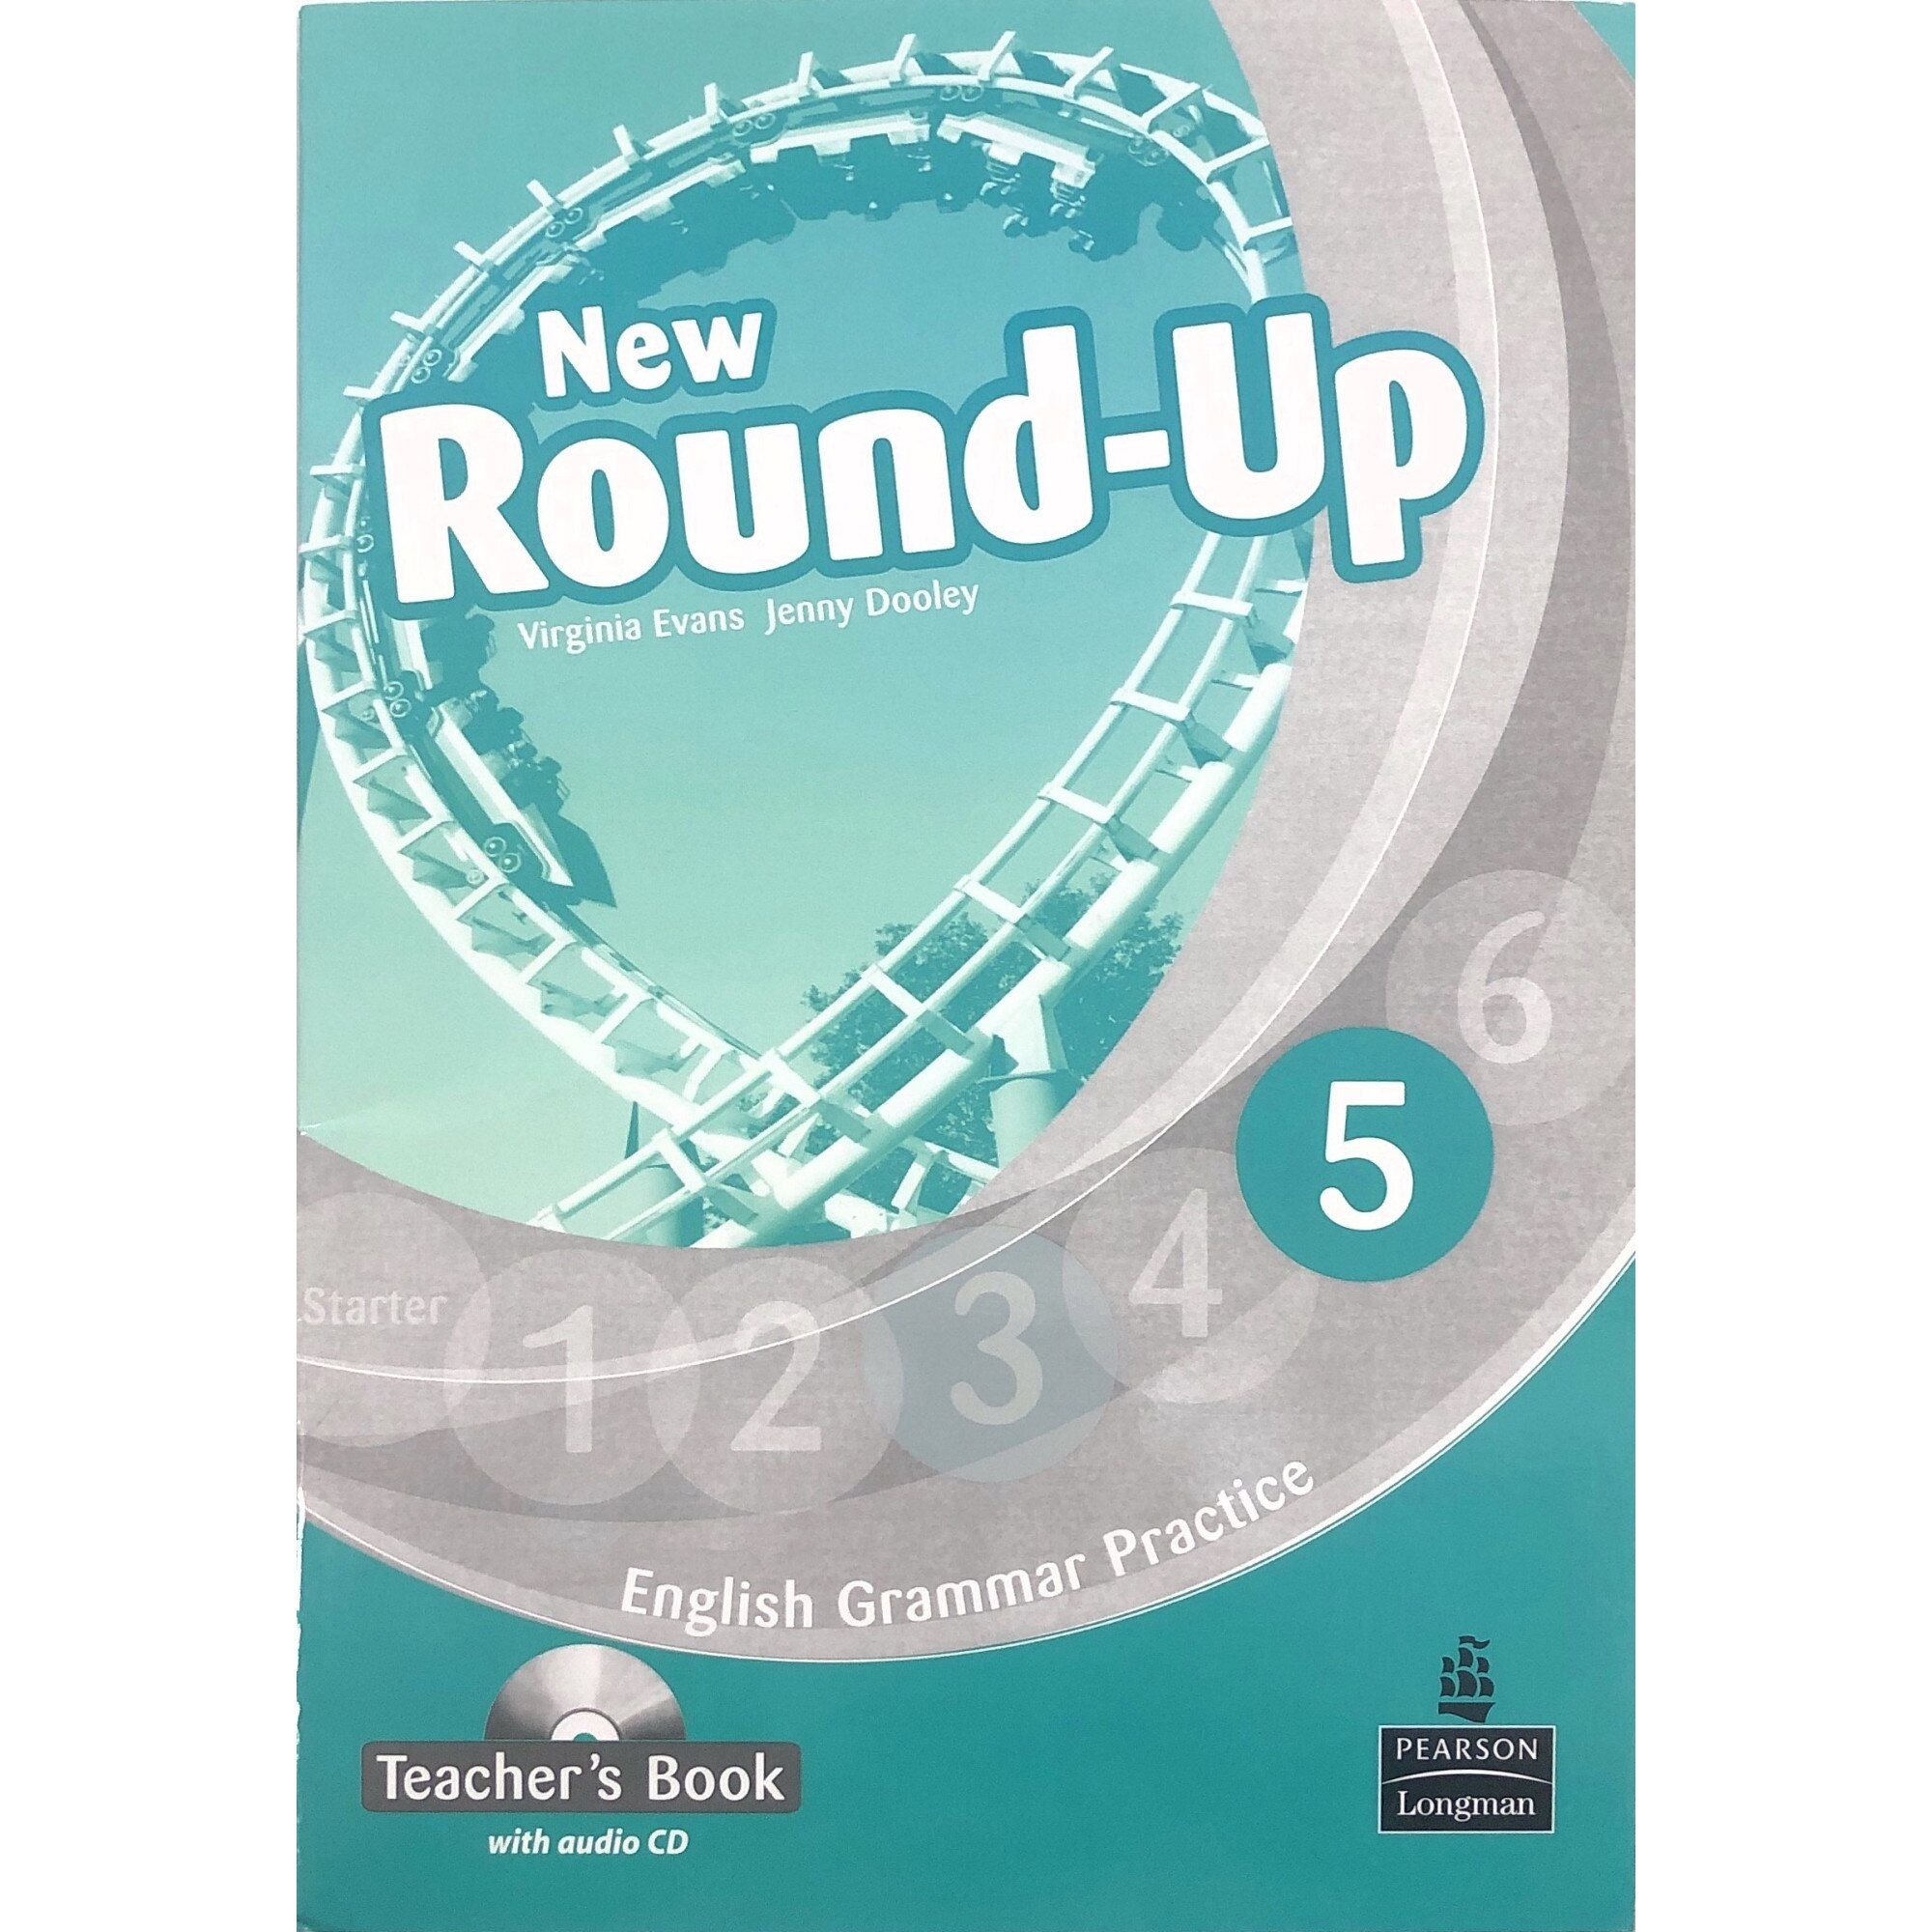 Round up 3 teachers. Round up 2. New Round up 2. Round up Virginia Evans. New Round up 5.